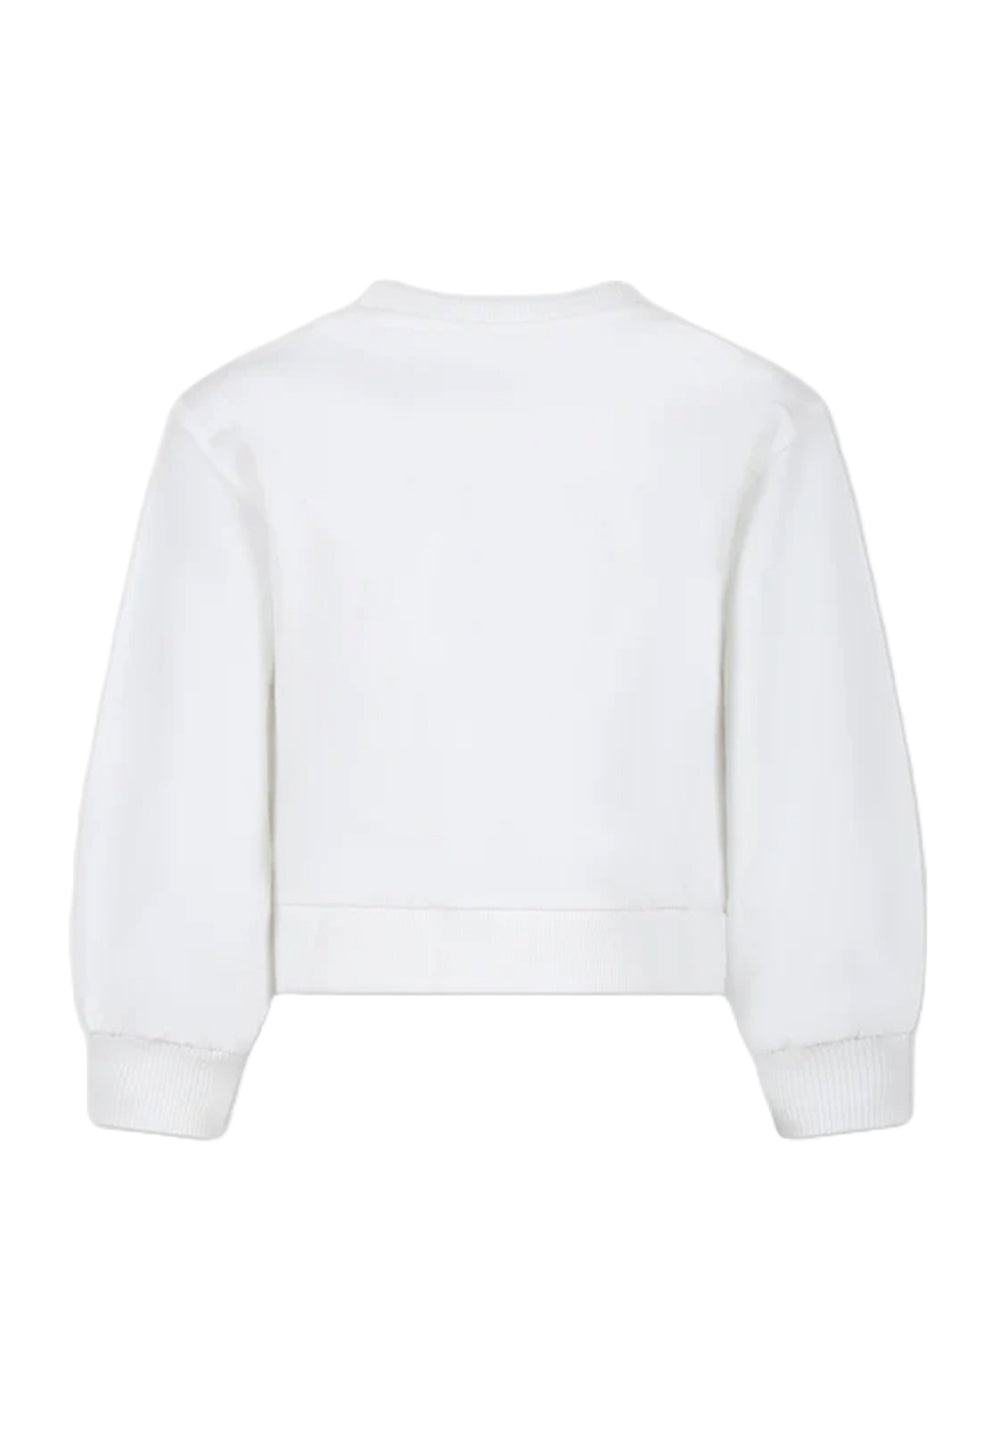 Weißes Sweatshirt mit Rundhalsausschnitt für Mädchen